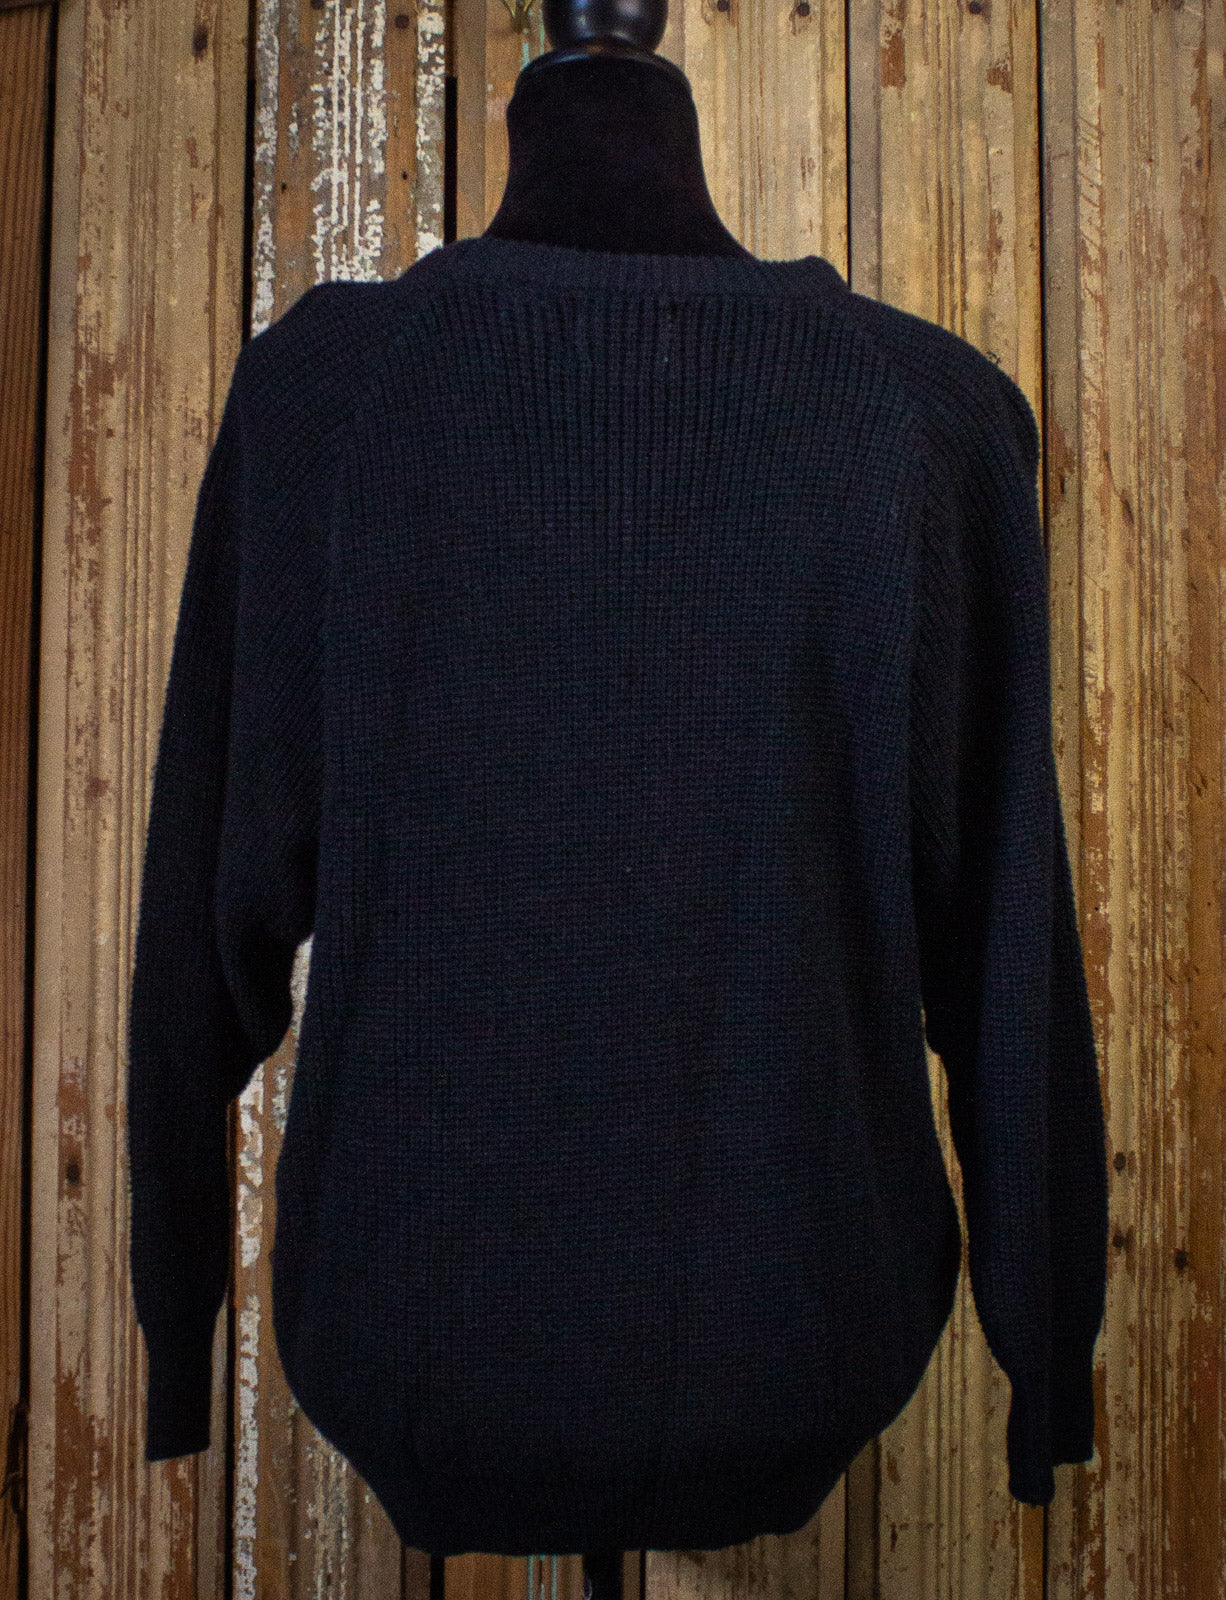 Vintage Mystic Blues Western Sweater 90s Black Medium